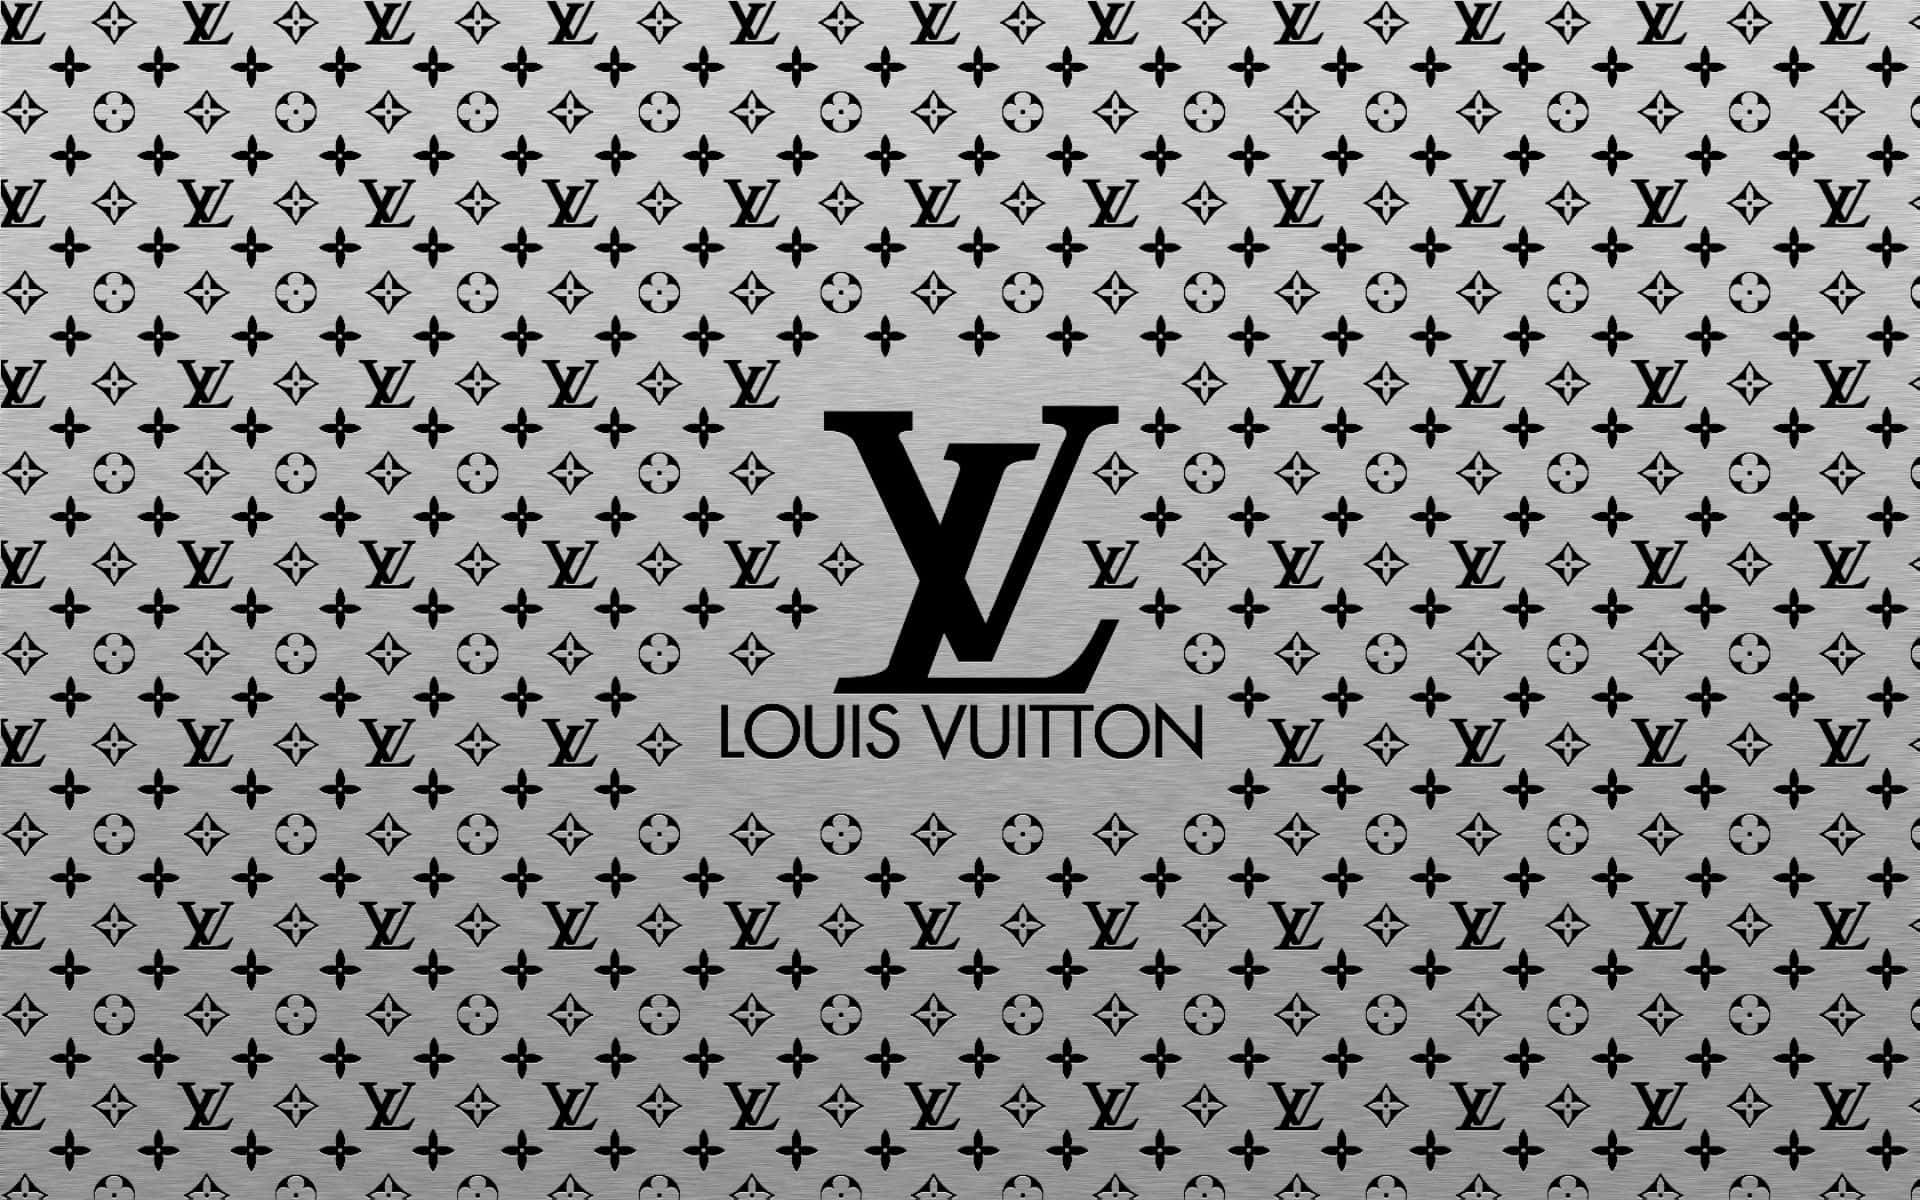 Tag dit stilspil til næste niveau med det kølige Louis Vuitton. Wallpaper